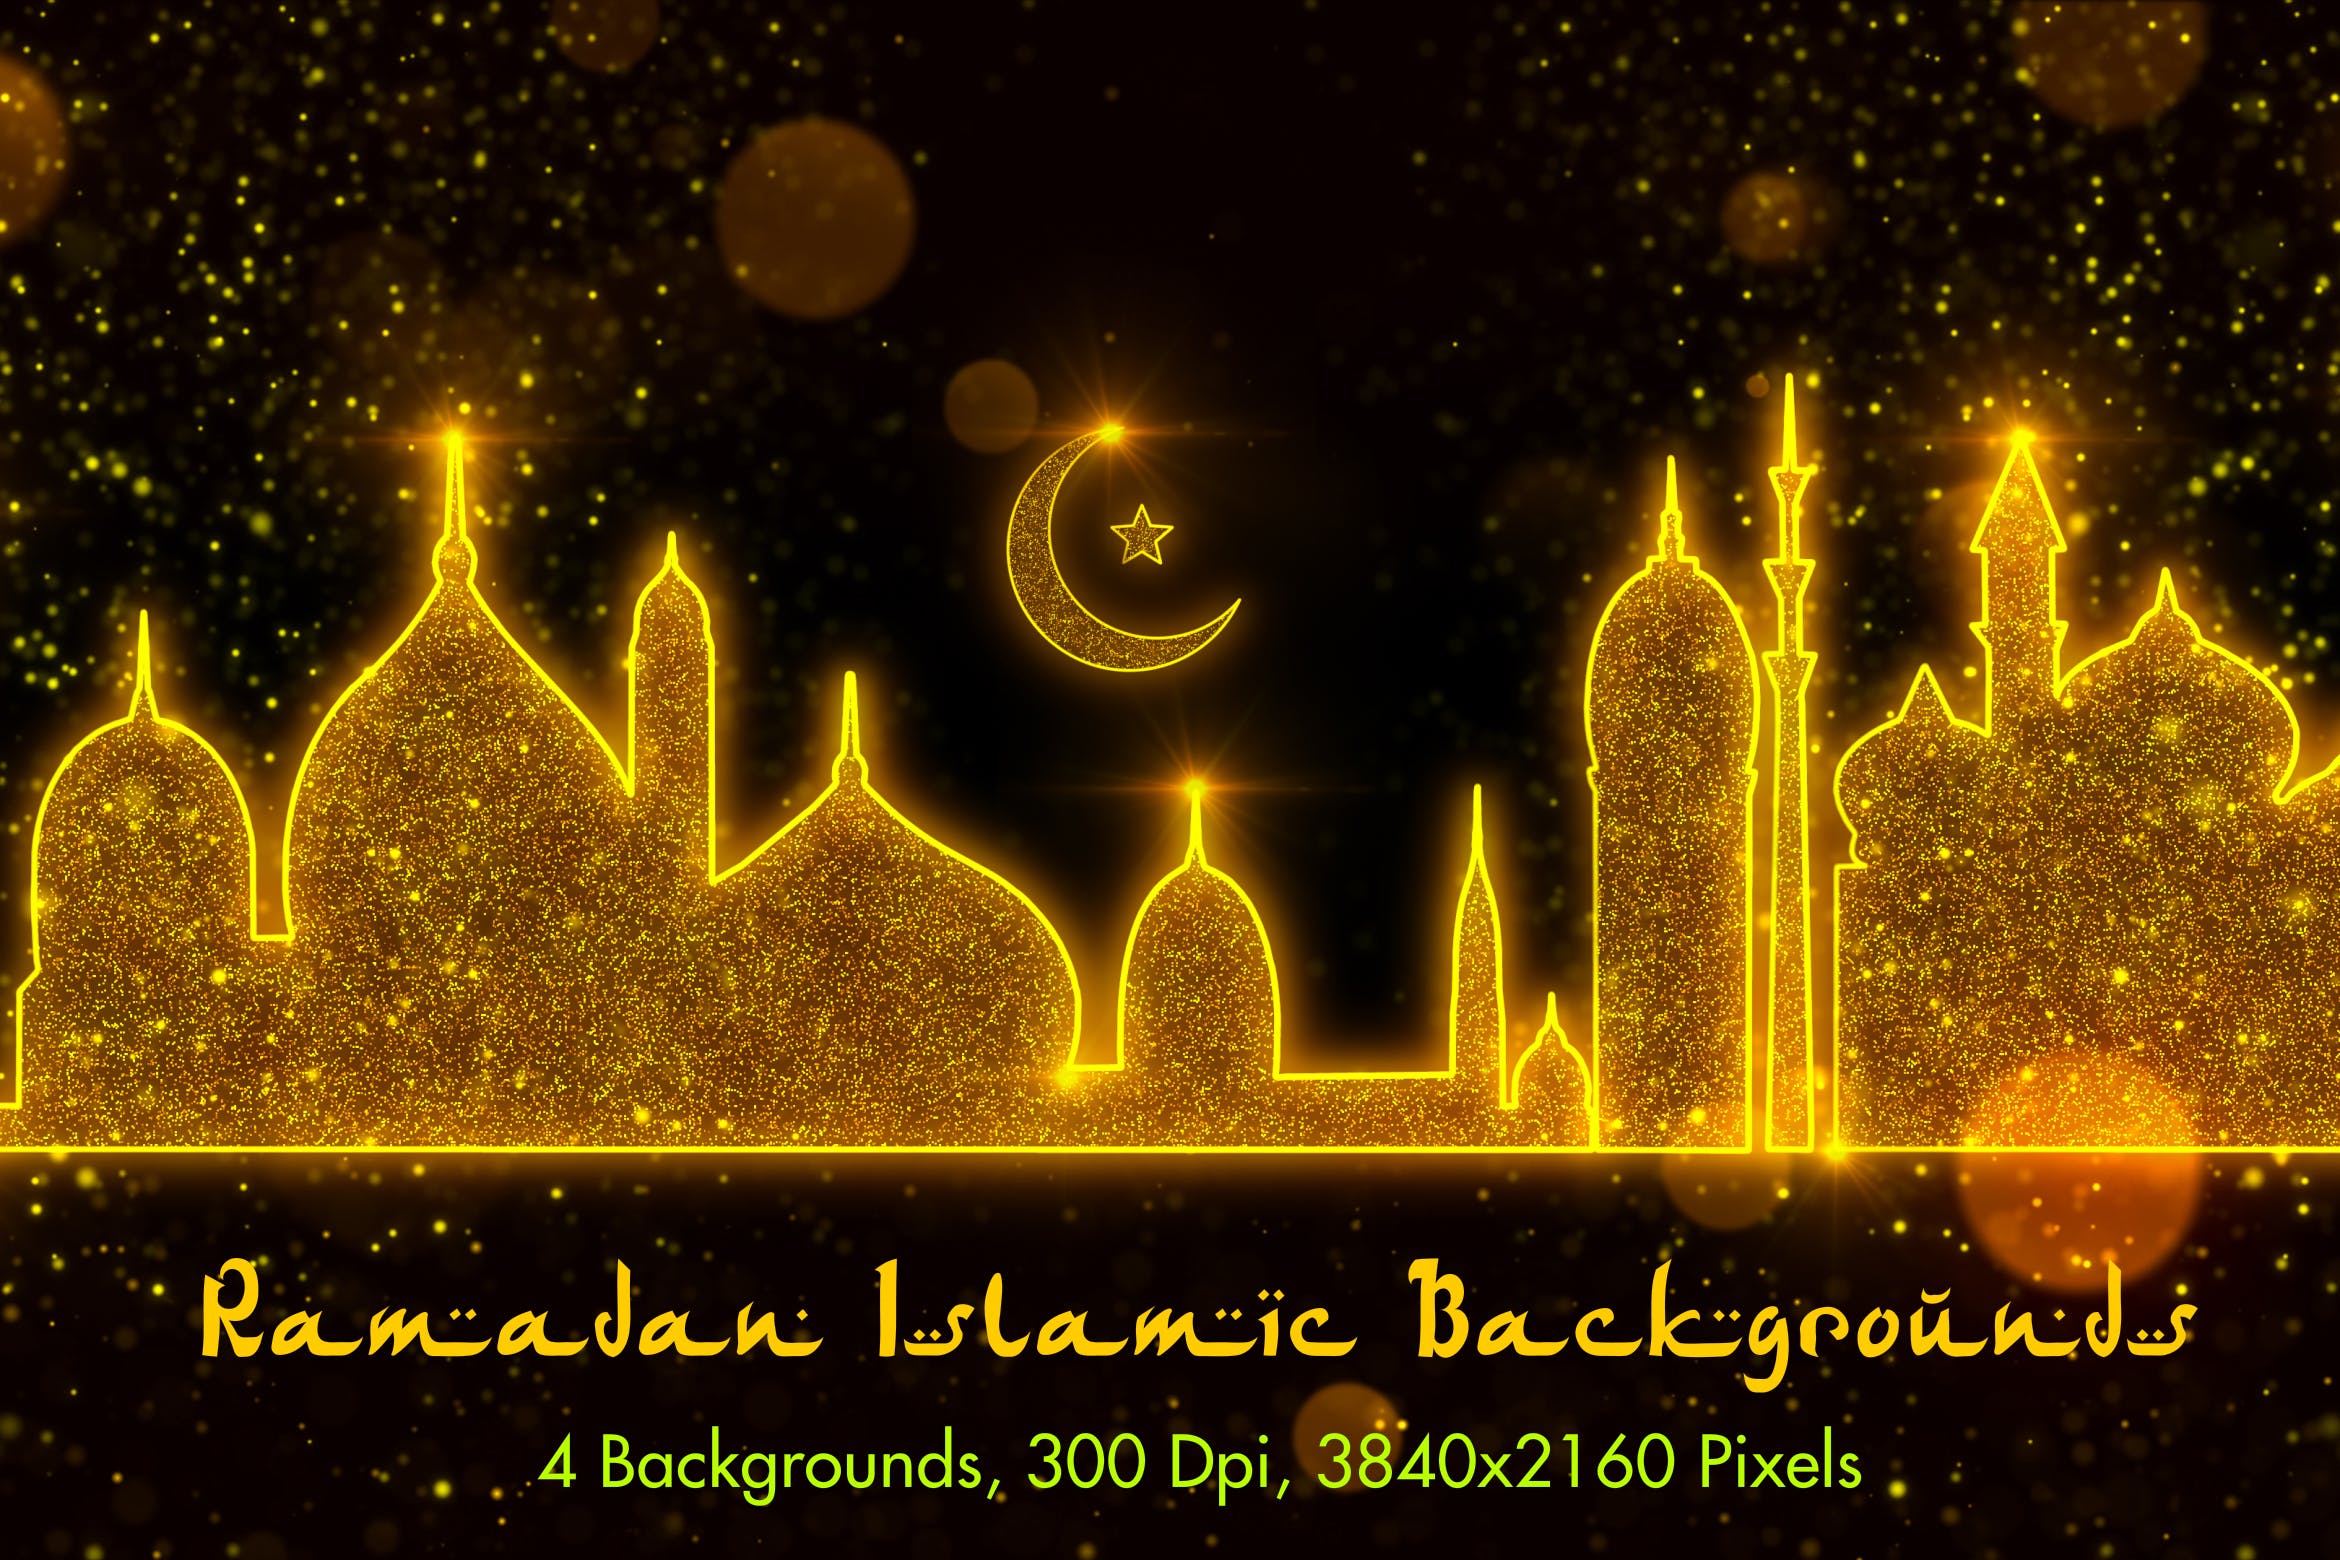 伊斯兰斋月节日主题高清背景素材 Ramadan Islamic Backgrounds插图